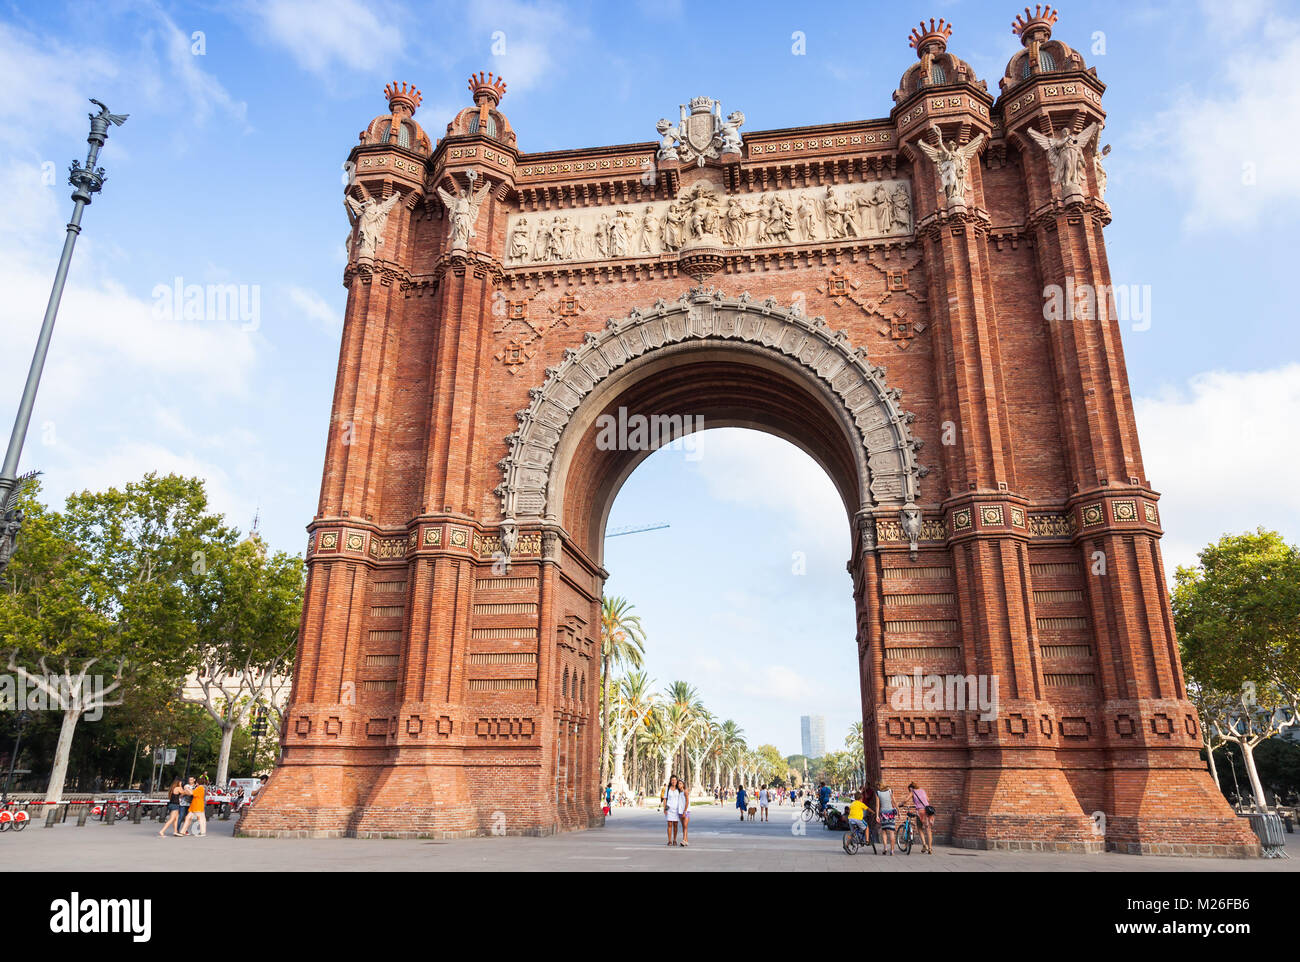 Barcelone, Espagne - 26 août 2014 : les gens à pied près de Arc de Triomf ou Arco de Triunfo en espagnol. C'est un arc de triomphe dans la ville de Barcelone en C Banque D'Images